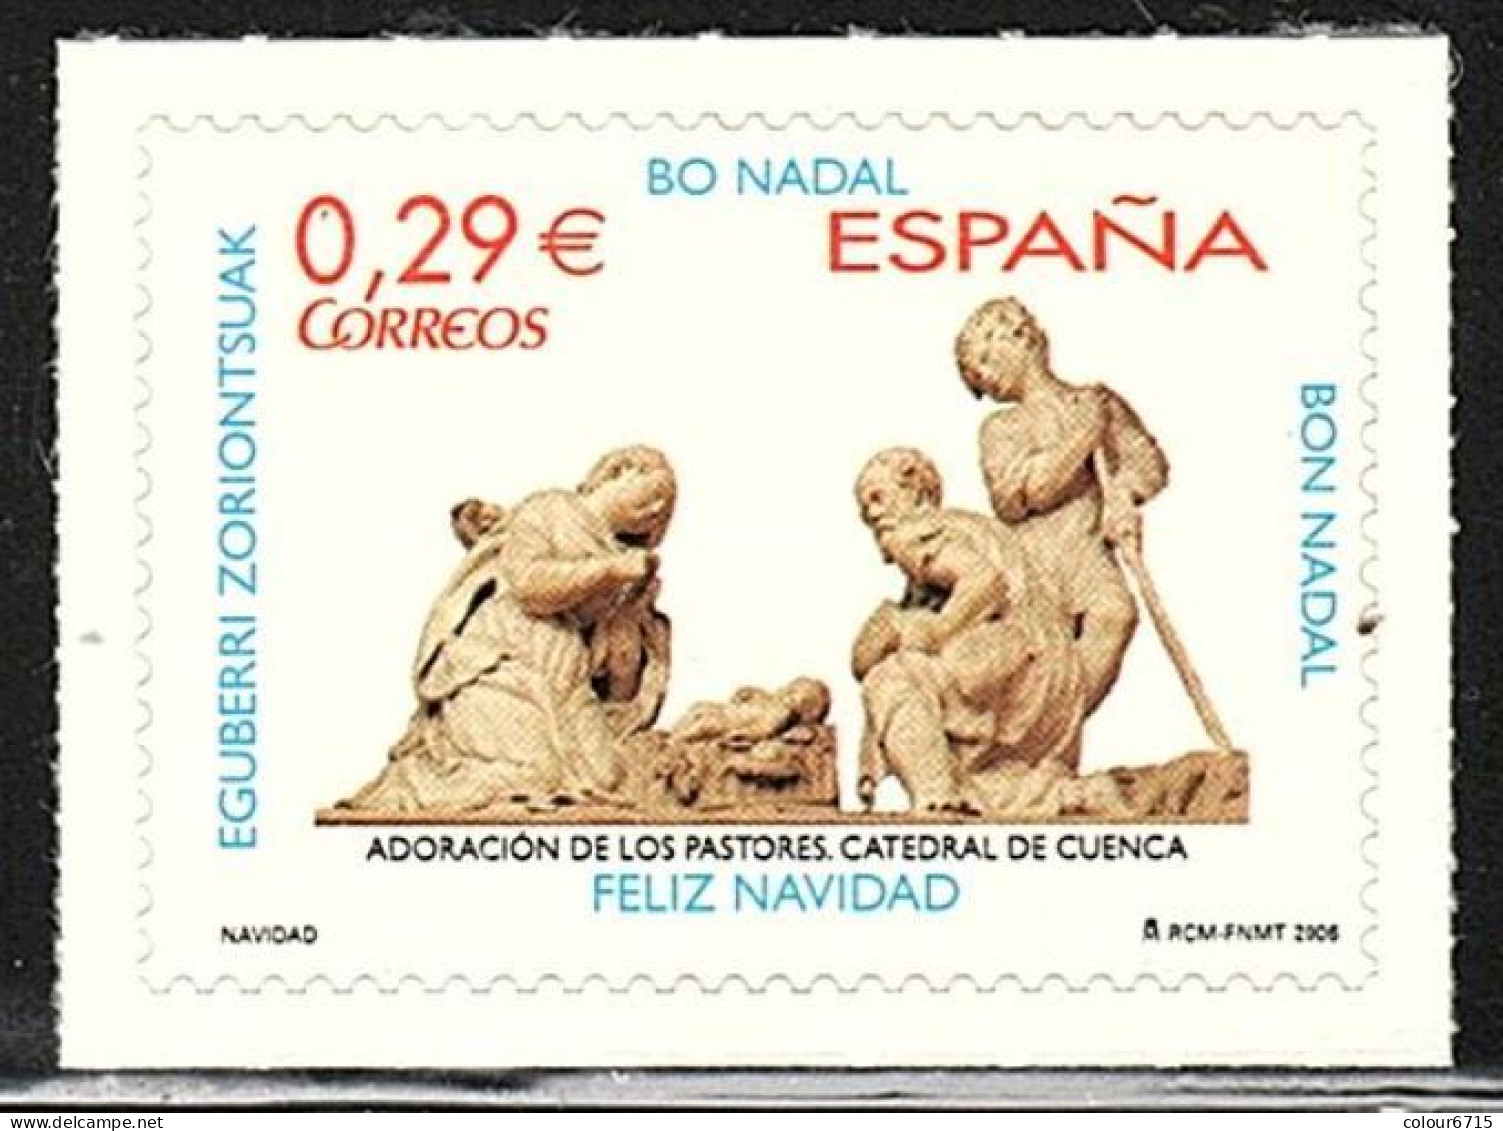 Spain 2006 Navidad Christmas Adoracion De Los Pastores Catedral De Cuenca Stamp 1v MNH - Neufs